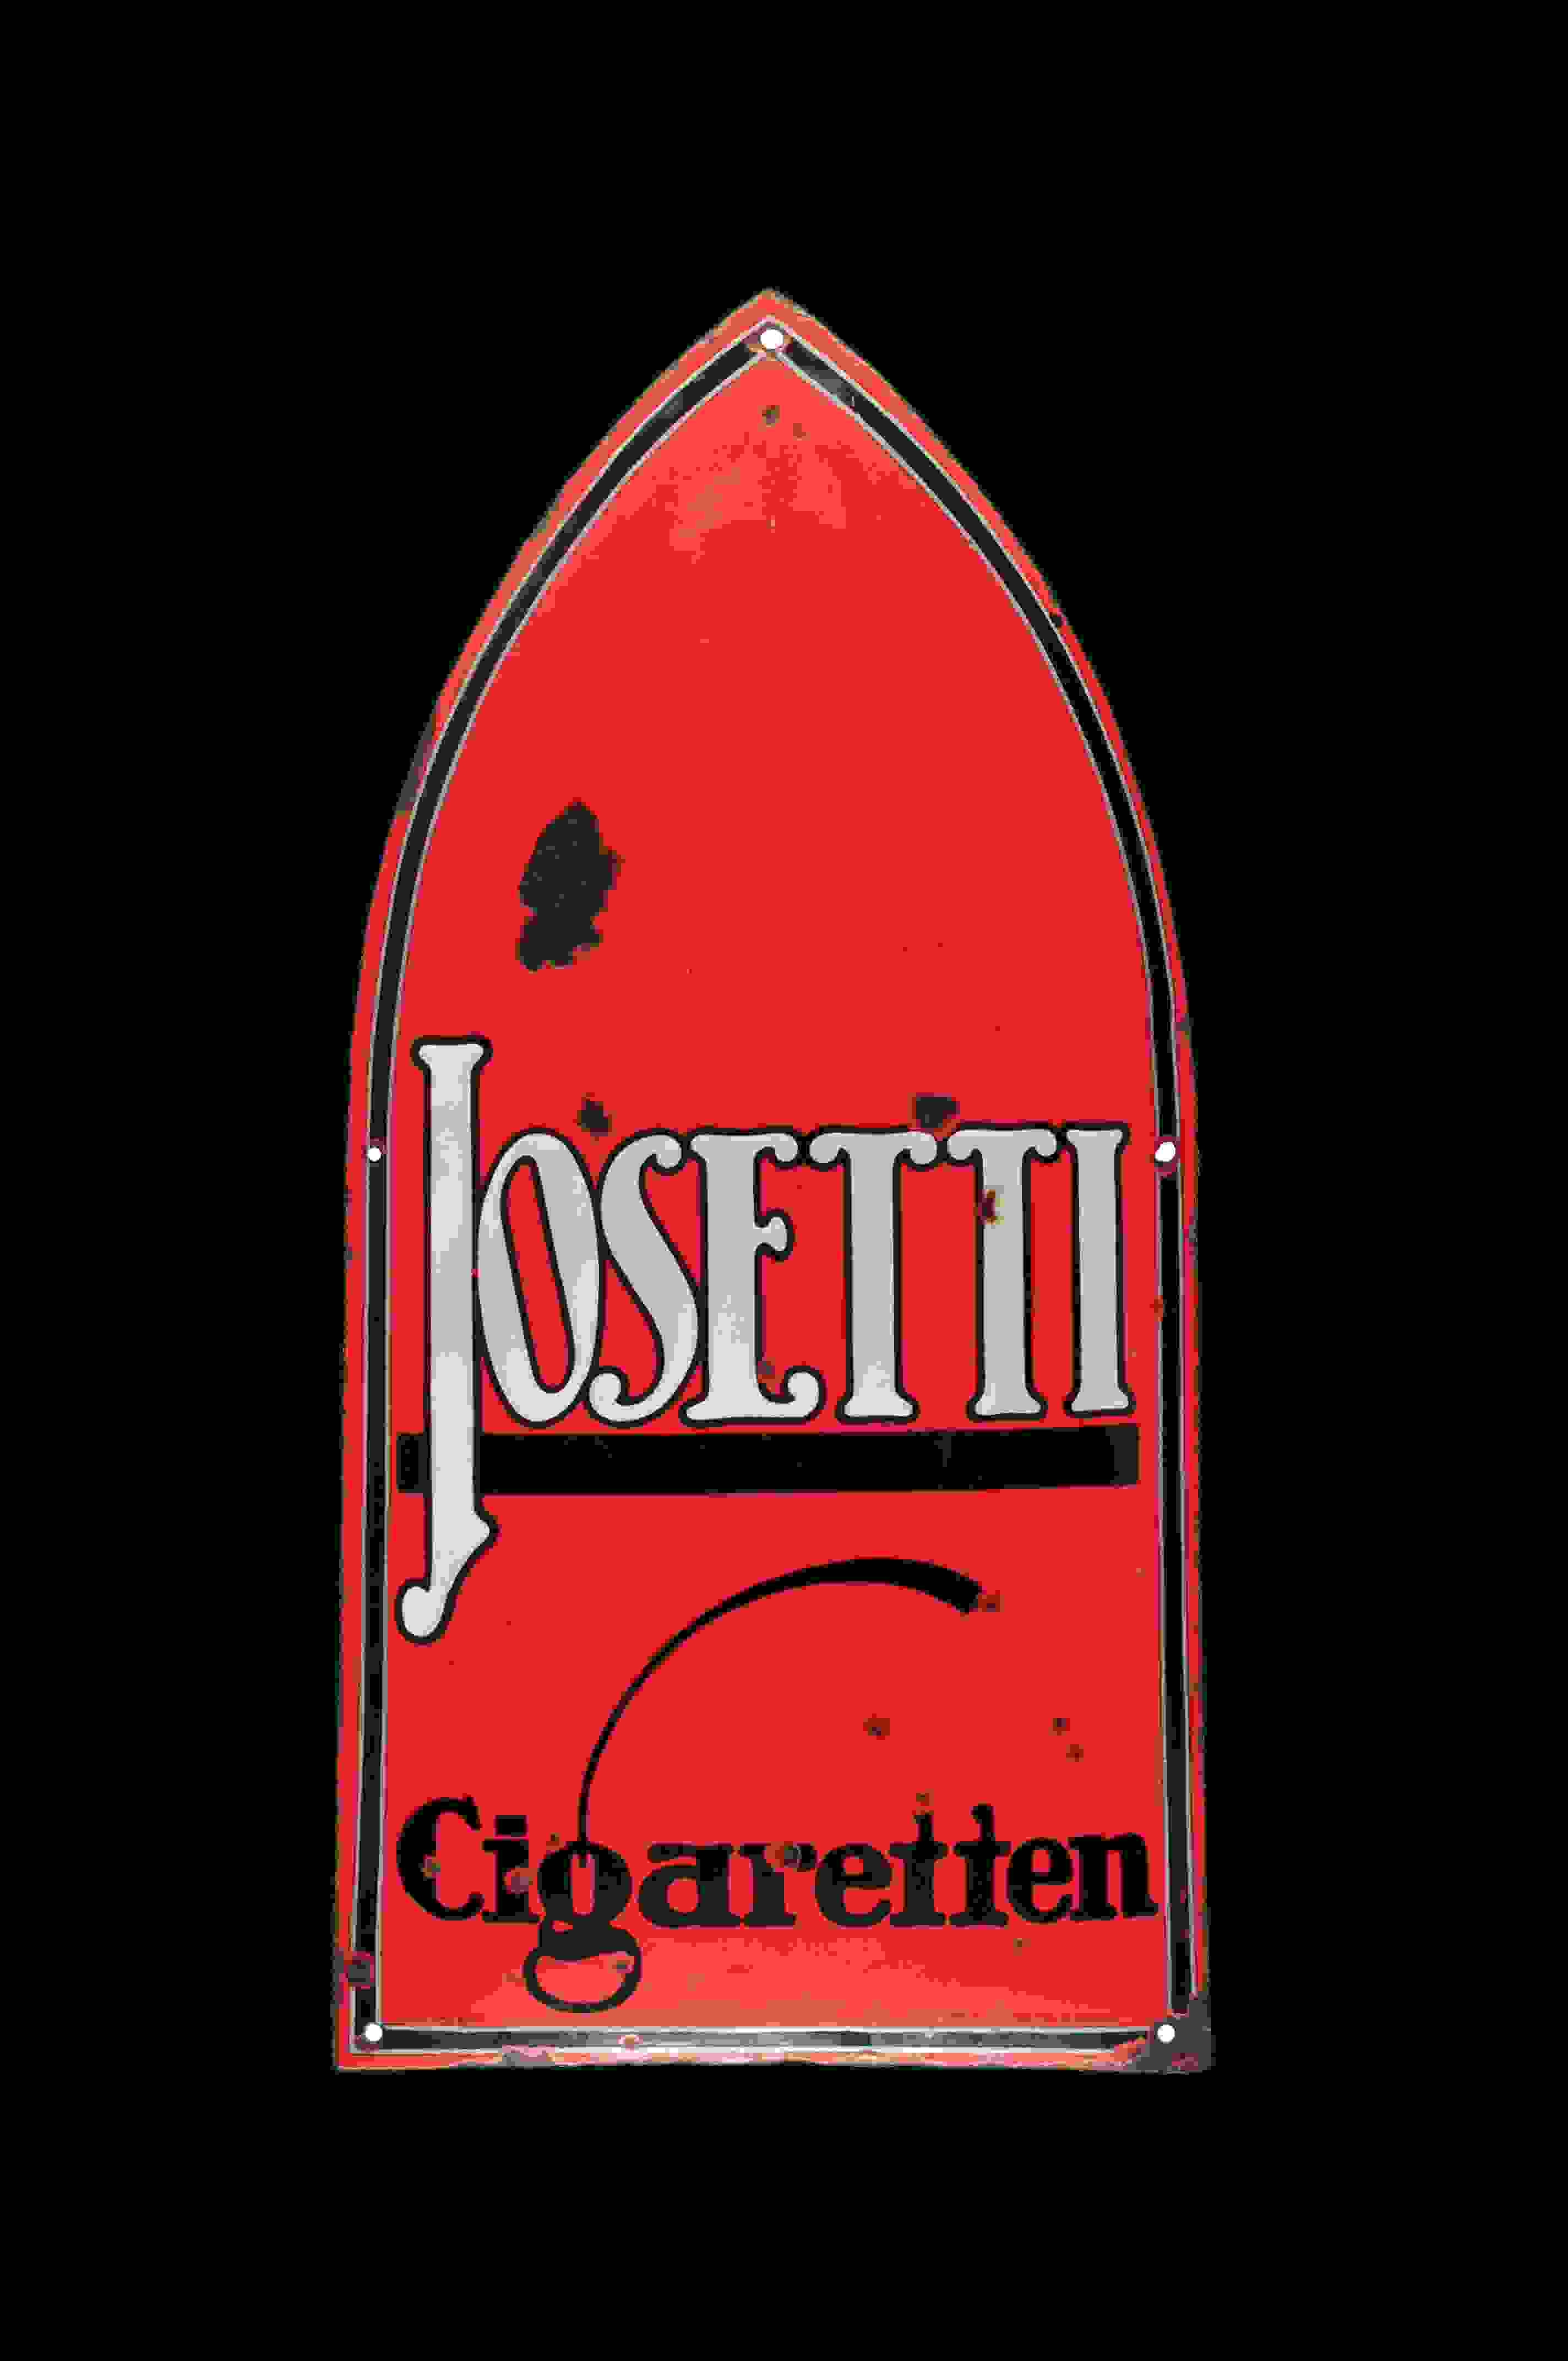 Josetti 